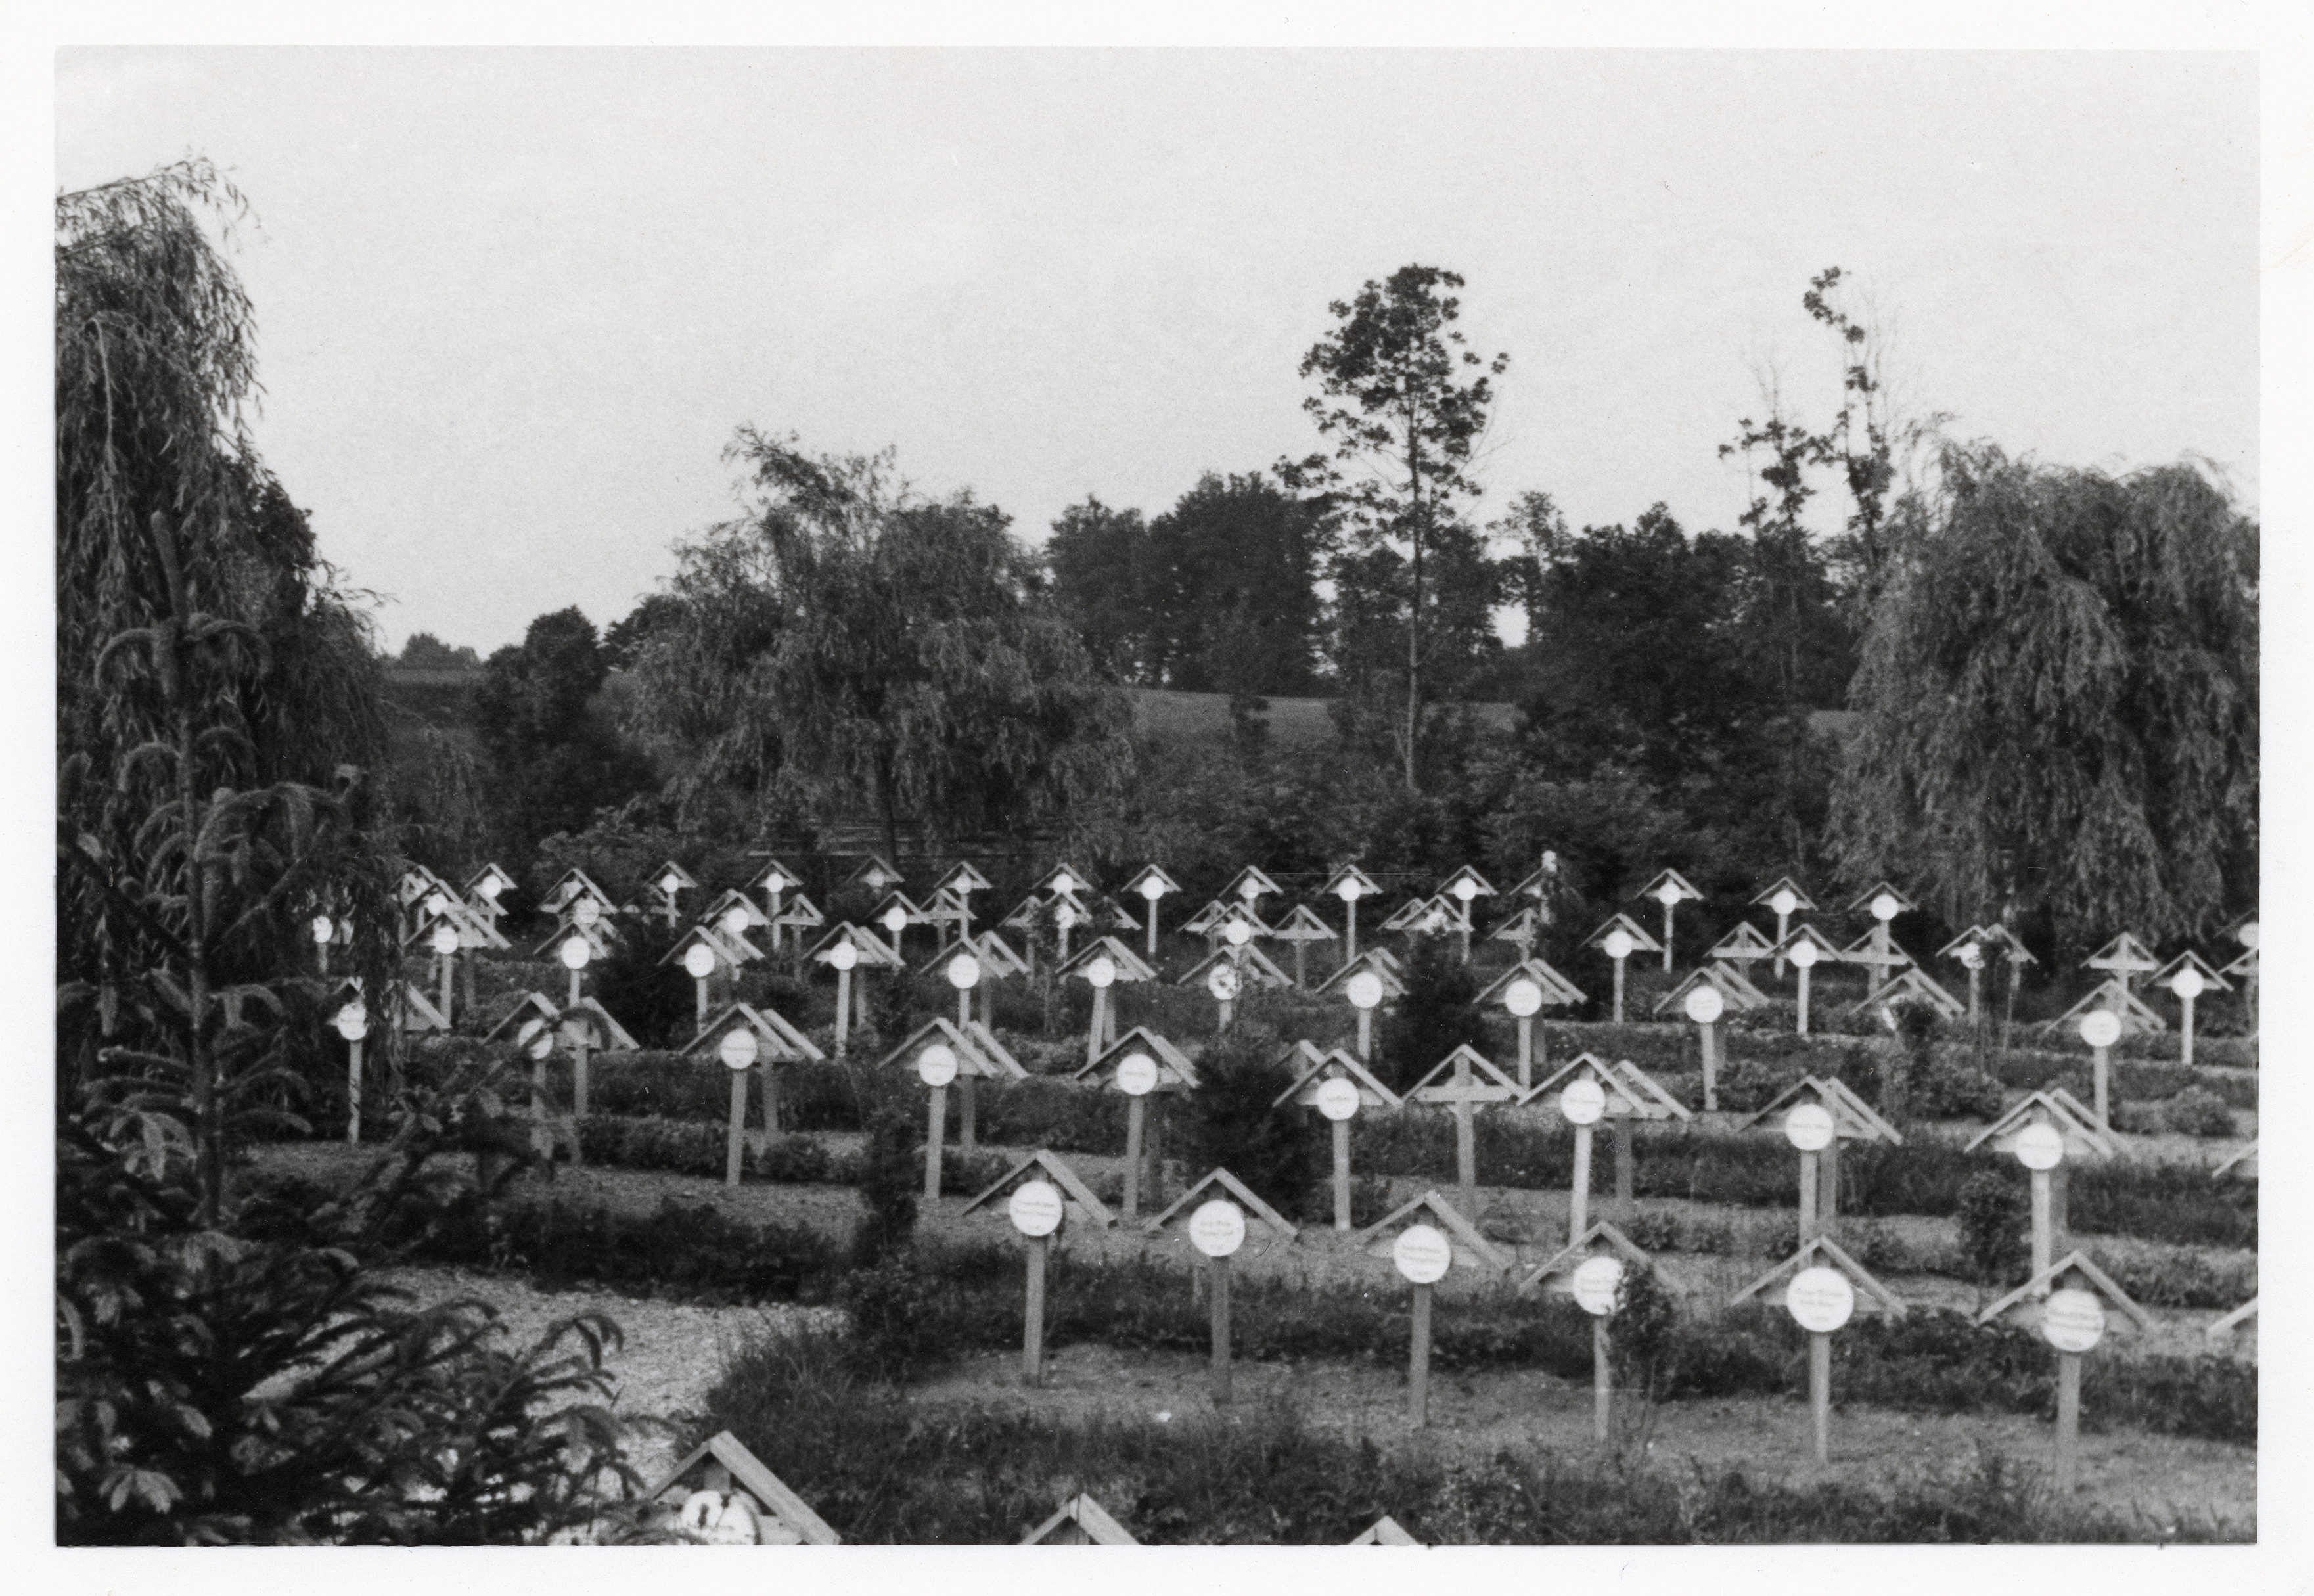 Wawrzik Friedhof